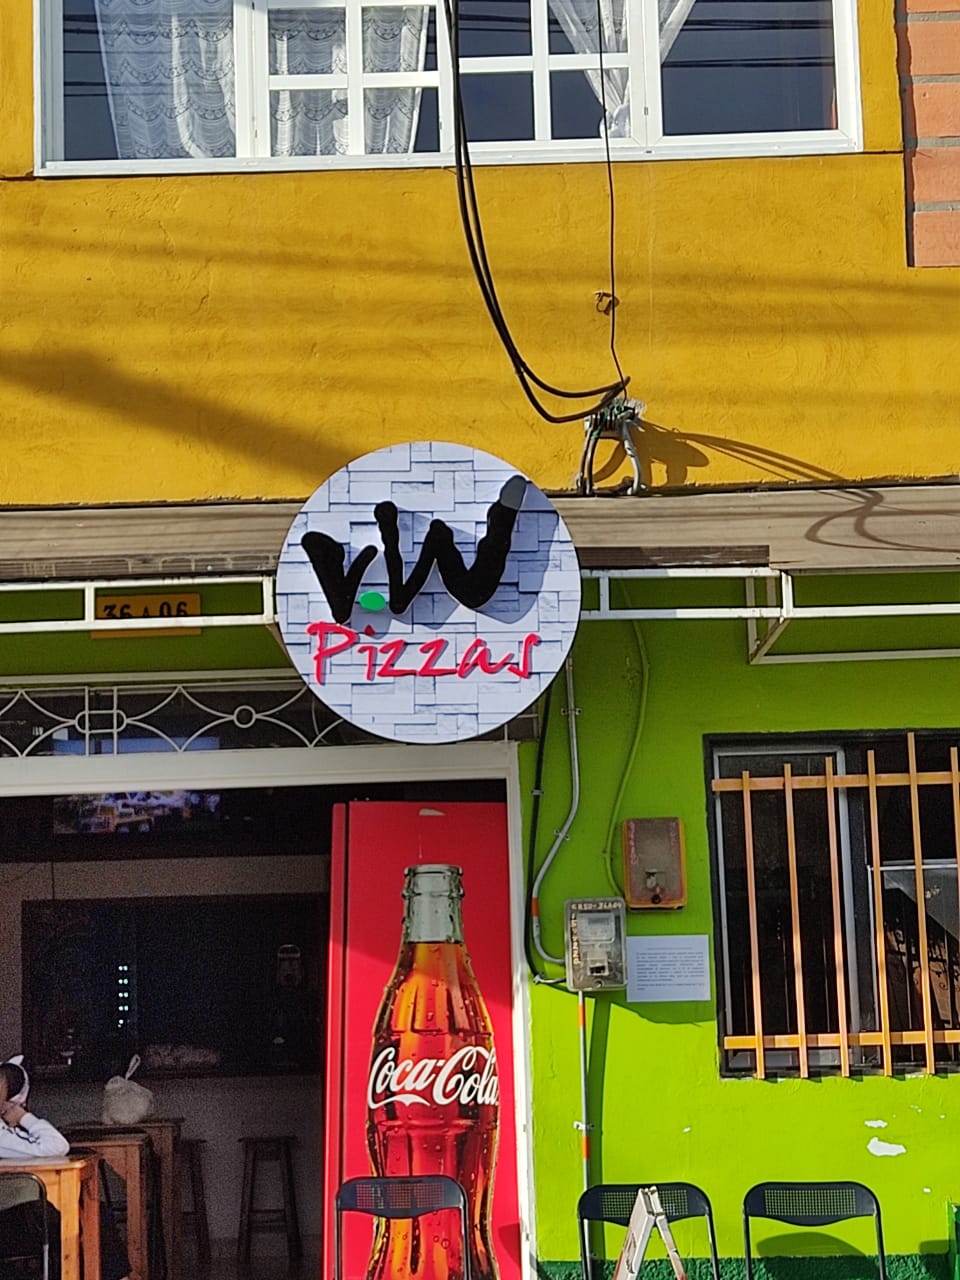 V.W Comidas Rapidas y pizza.